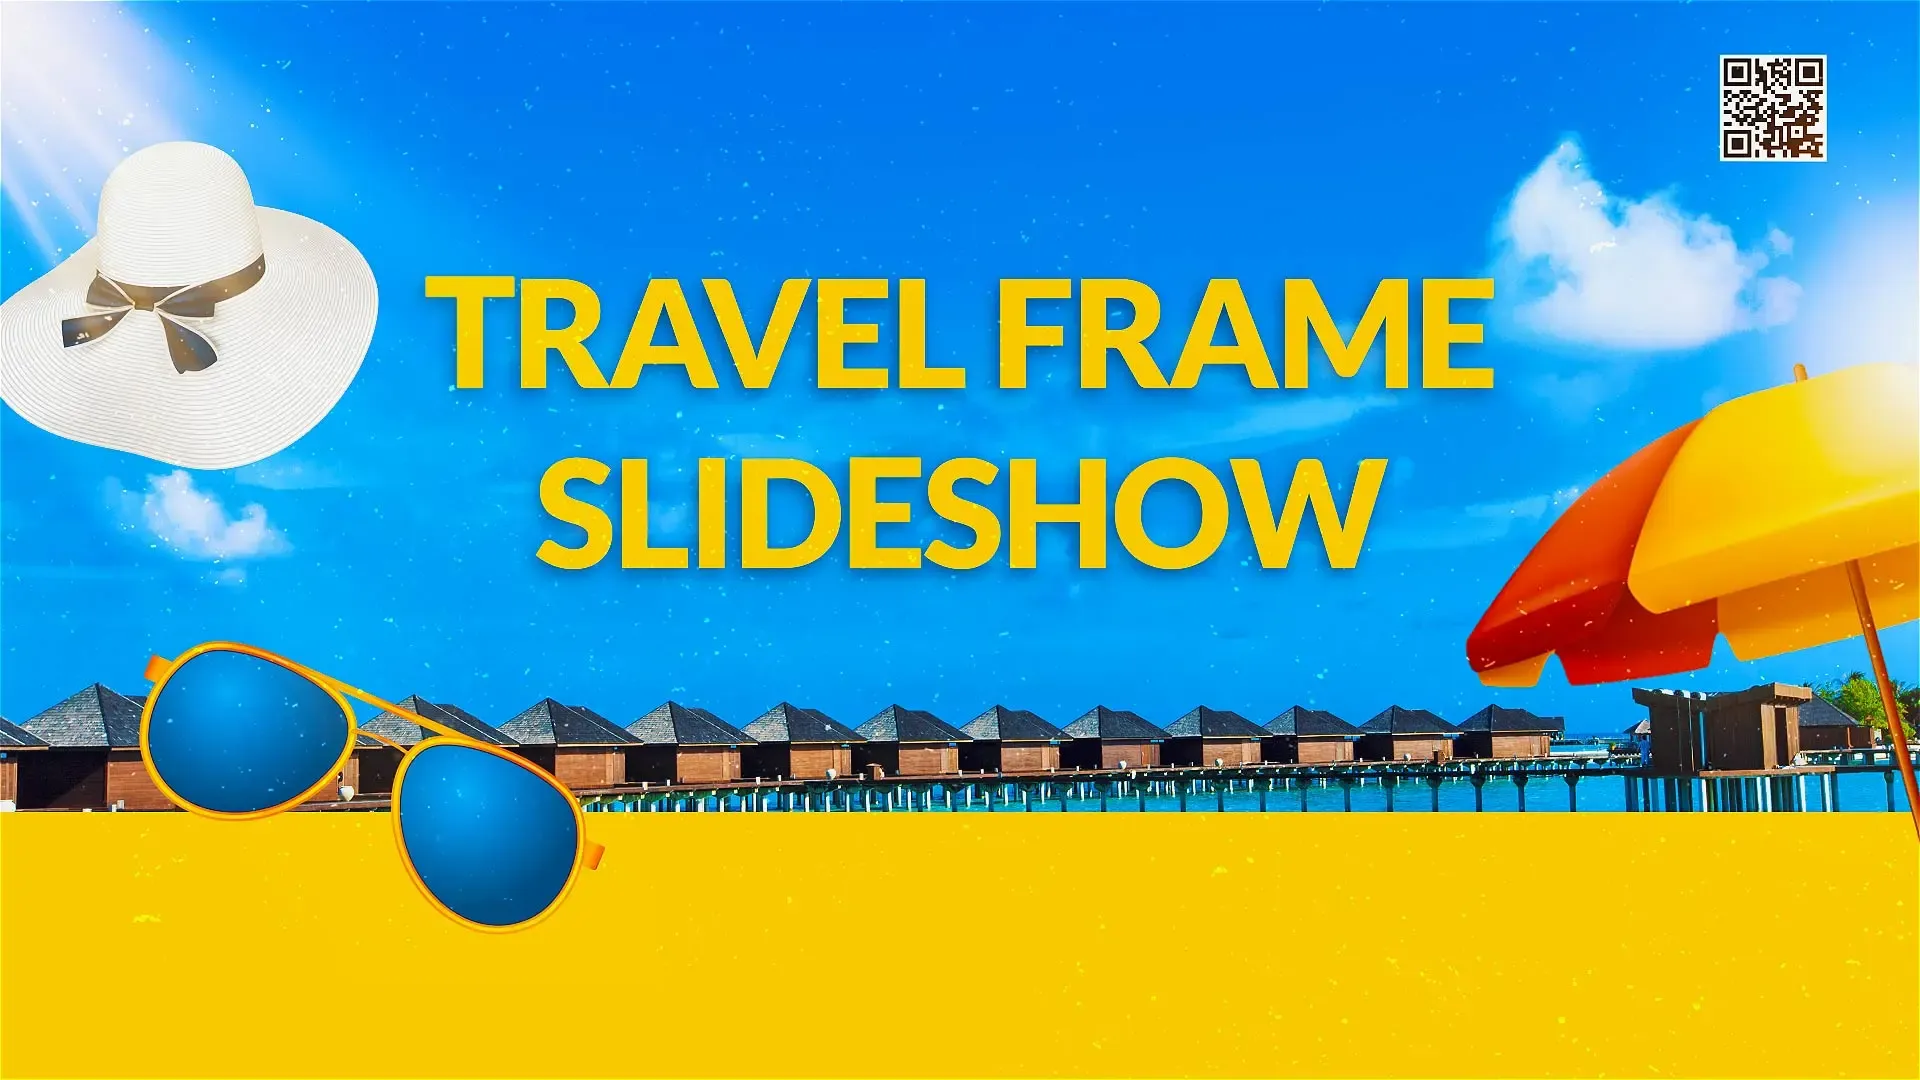 Travel Frame Slideshow Design